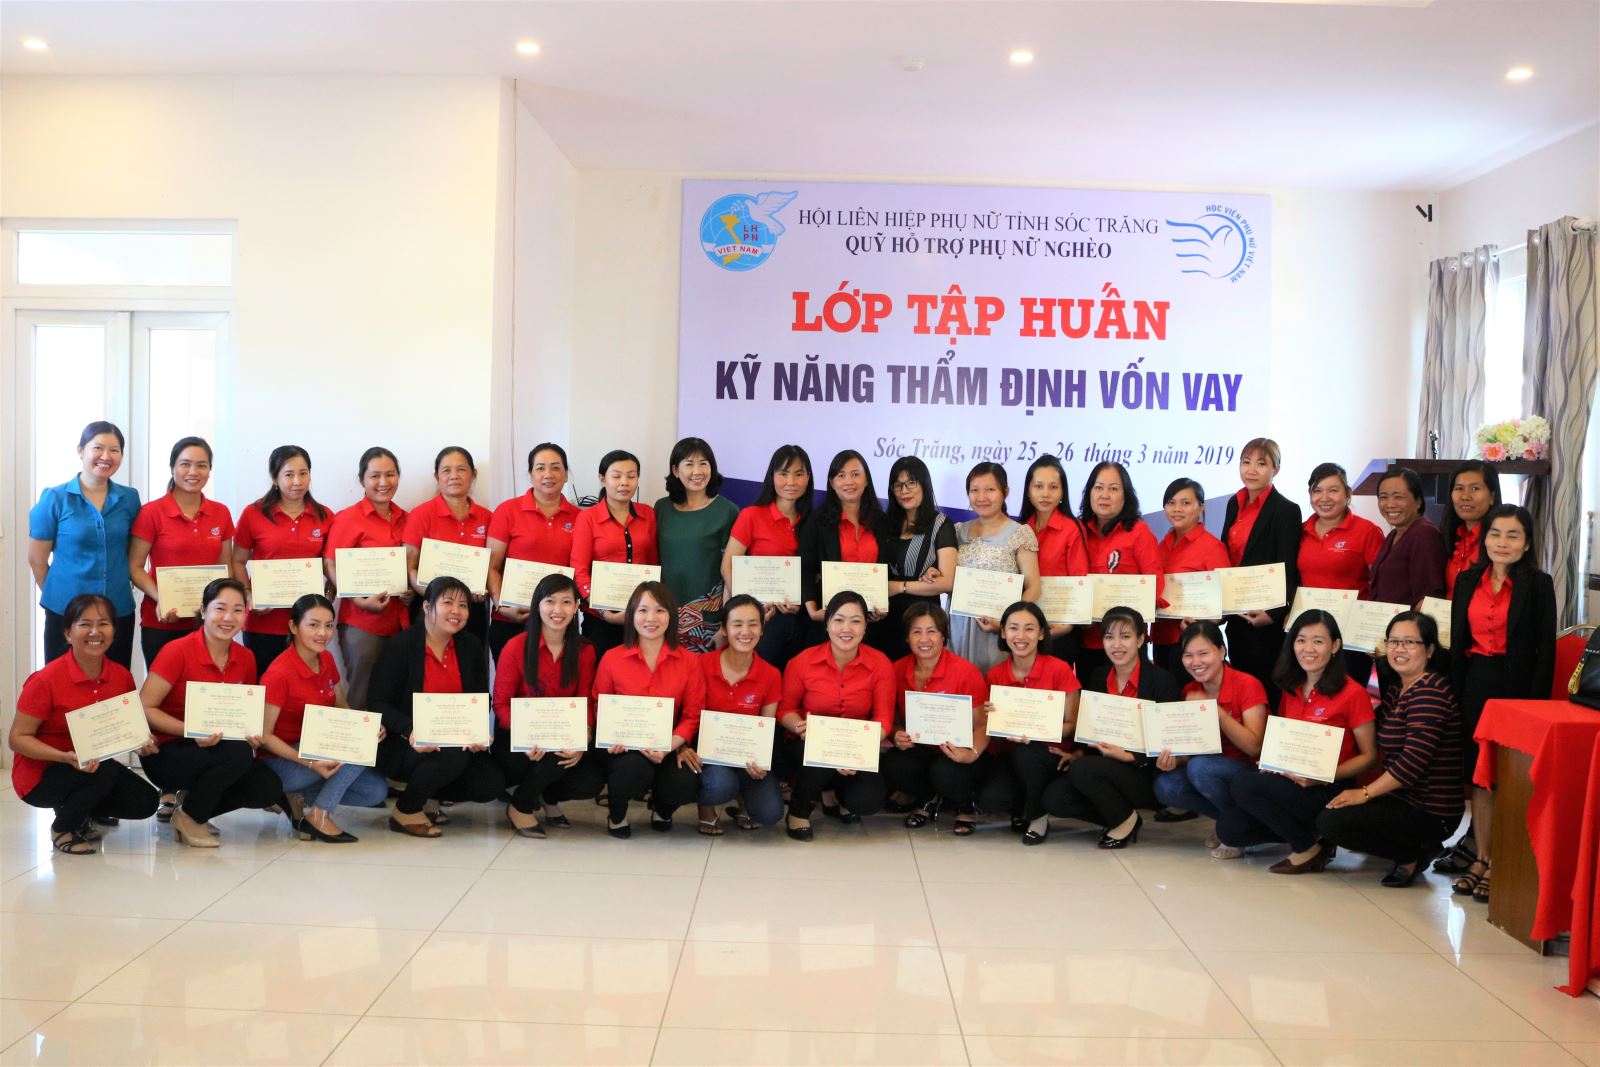  Học viện Phụ nữ Việt Nam tổ chức khóa tập huấn Kỹ năng Thẩm định vốn vay  tại tỉnh Sóc Trăng